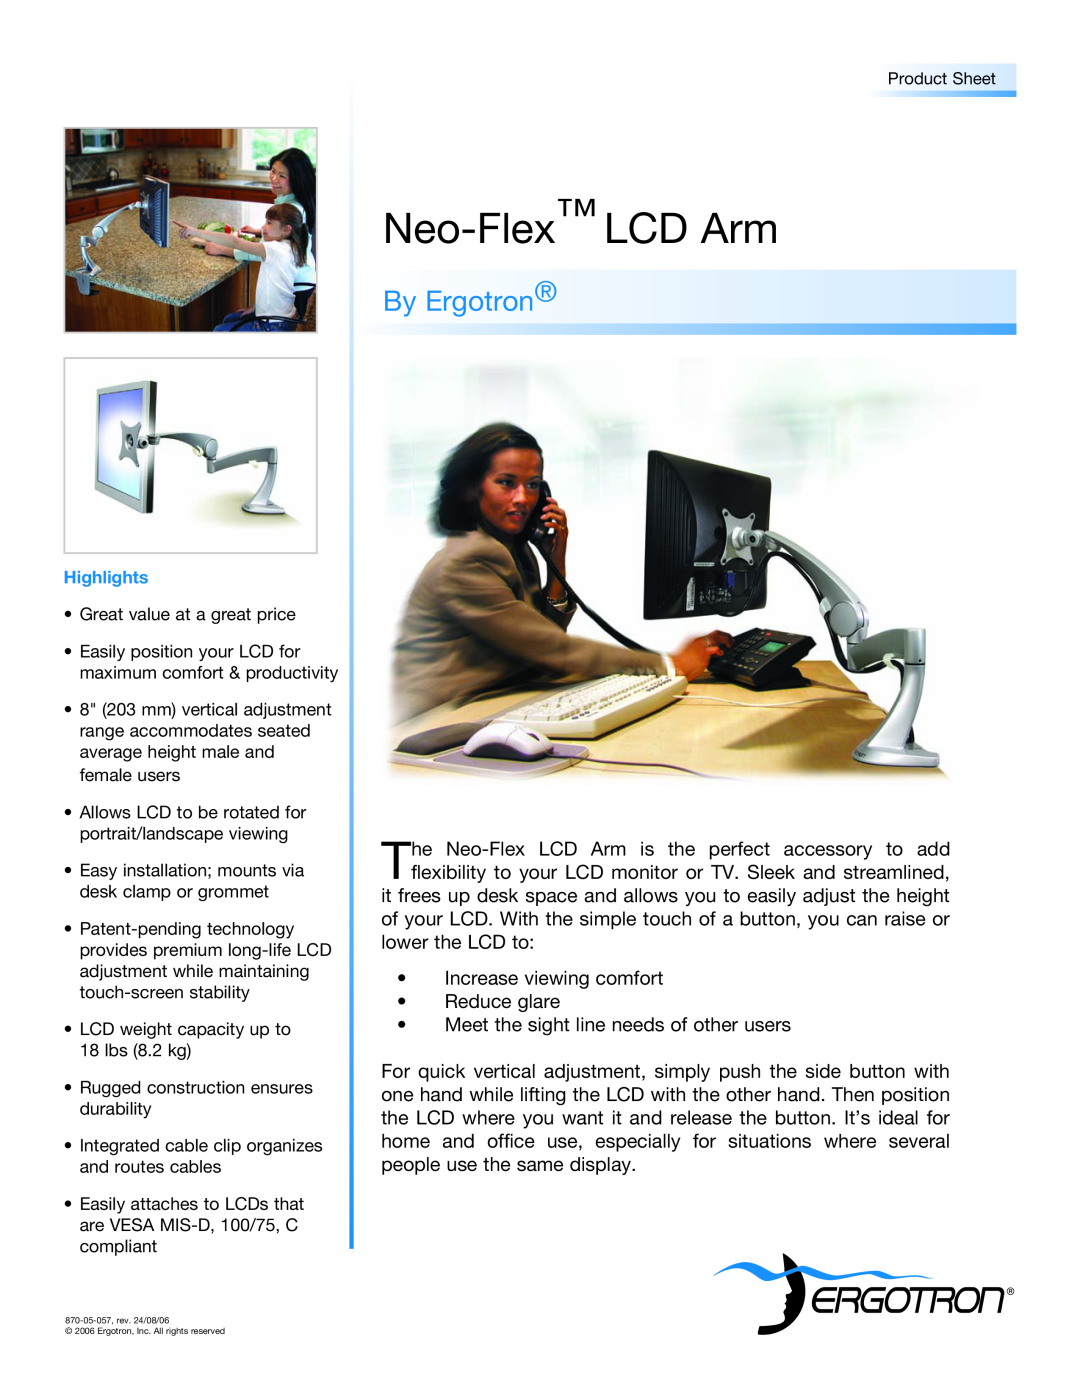 Ergotron manual Neo-Flex LCD Arm, By Ergotron 